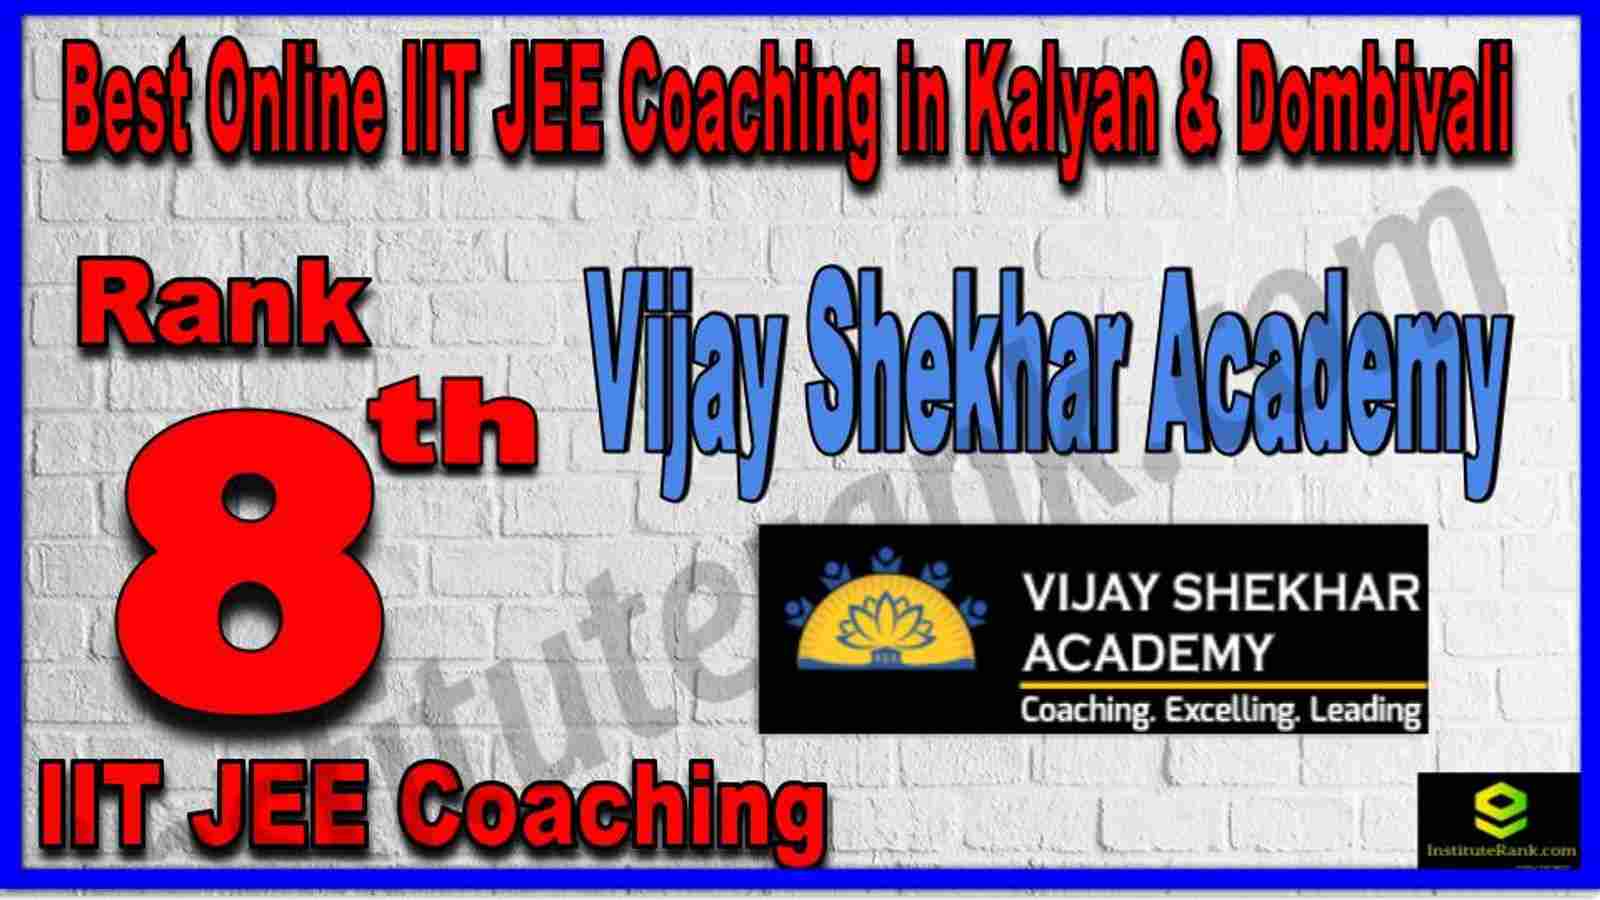 Rank 8th Best Online IIT JEE Coaching in Kalyan & Dombivali 